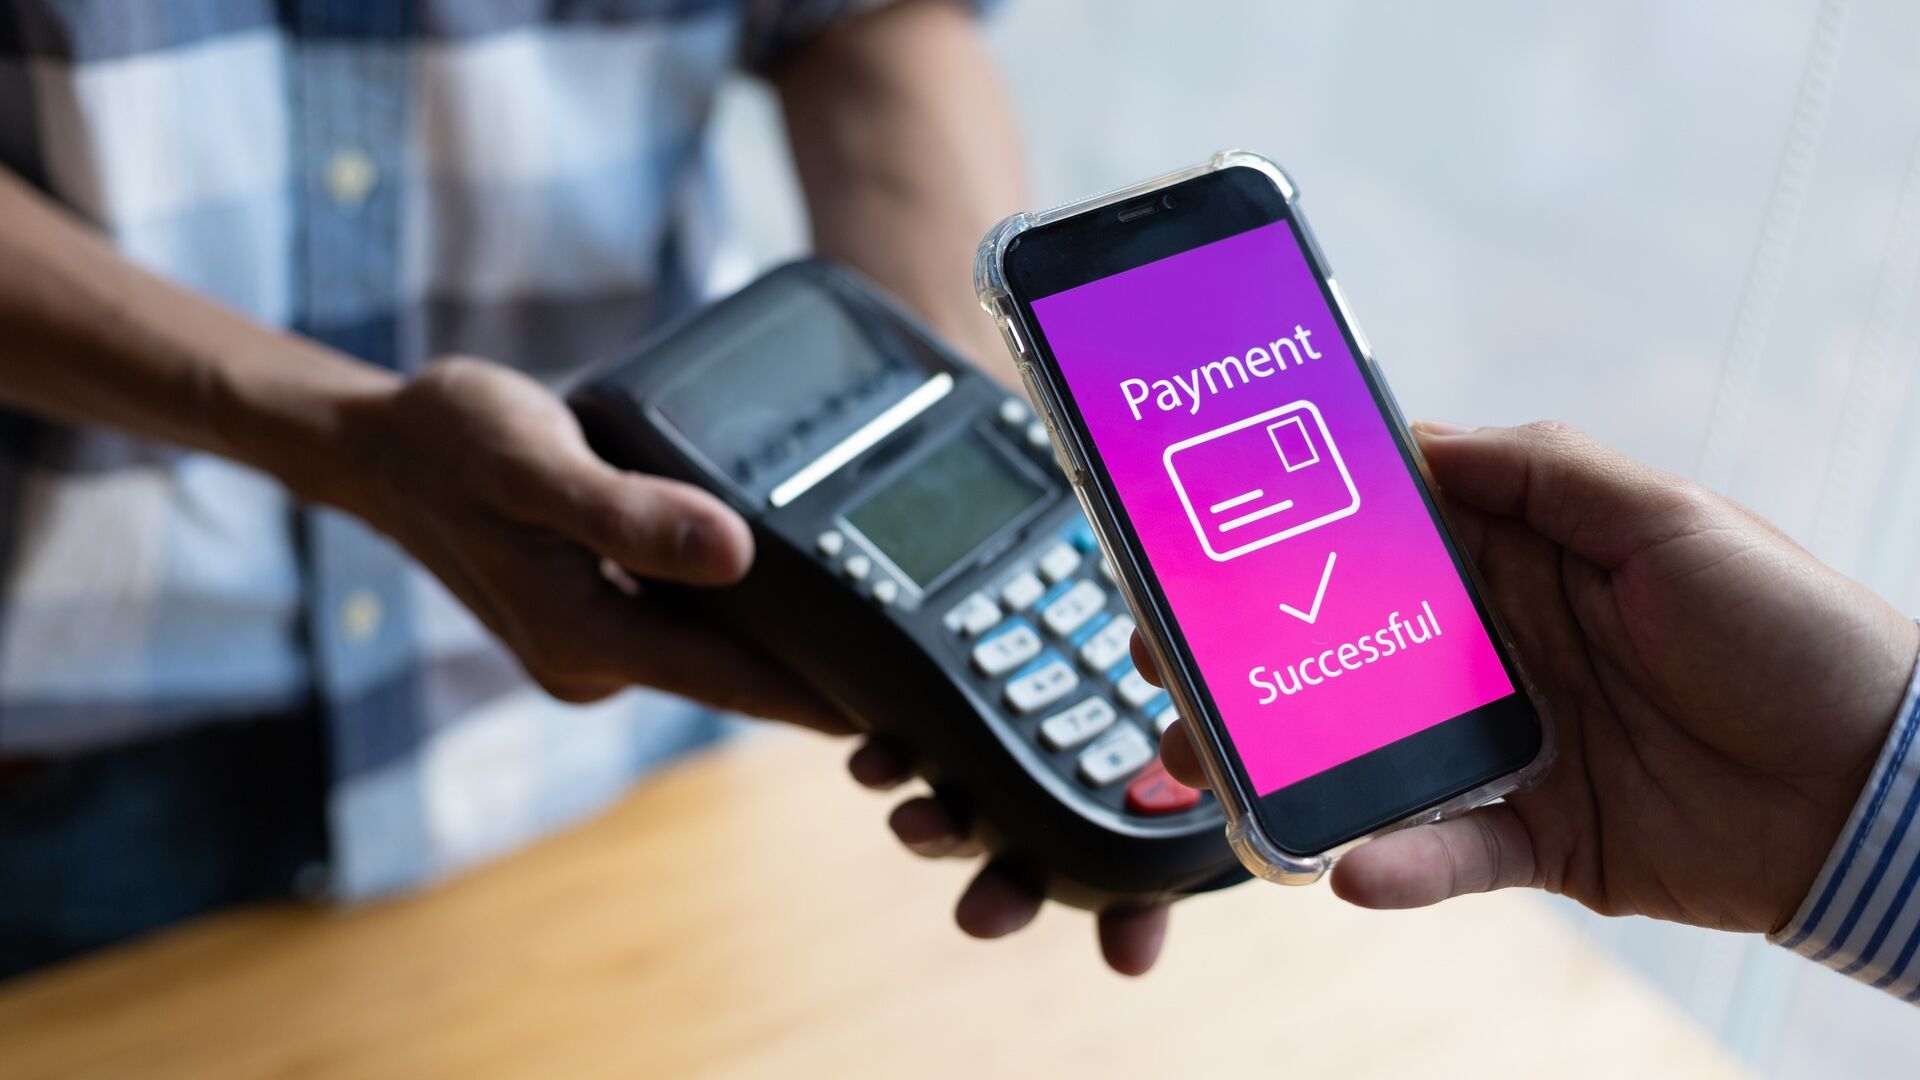 मोबाइल भुगतान: उपभोक्ता का विश्वास हासिल करने के लिए मोबाइल भुगतान के लाभों को प्रभावी ढंग से संप्रेषित किया जाना चाहिए और सुरक्षा समस्याओं को समाप्त किया जाना चाहिए